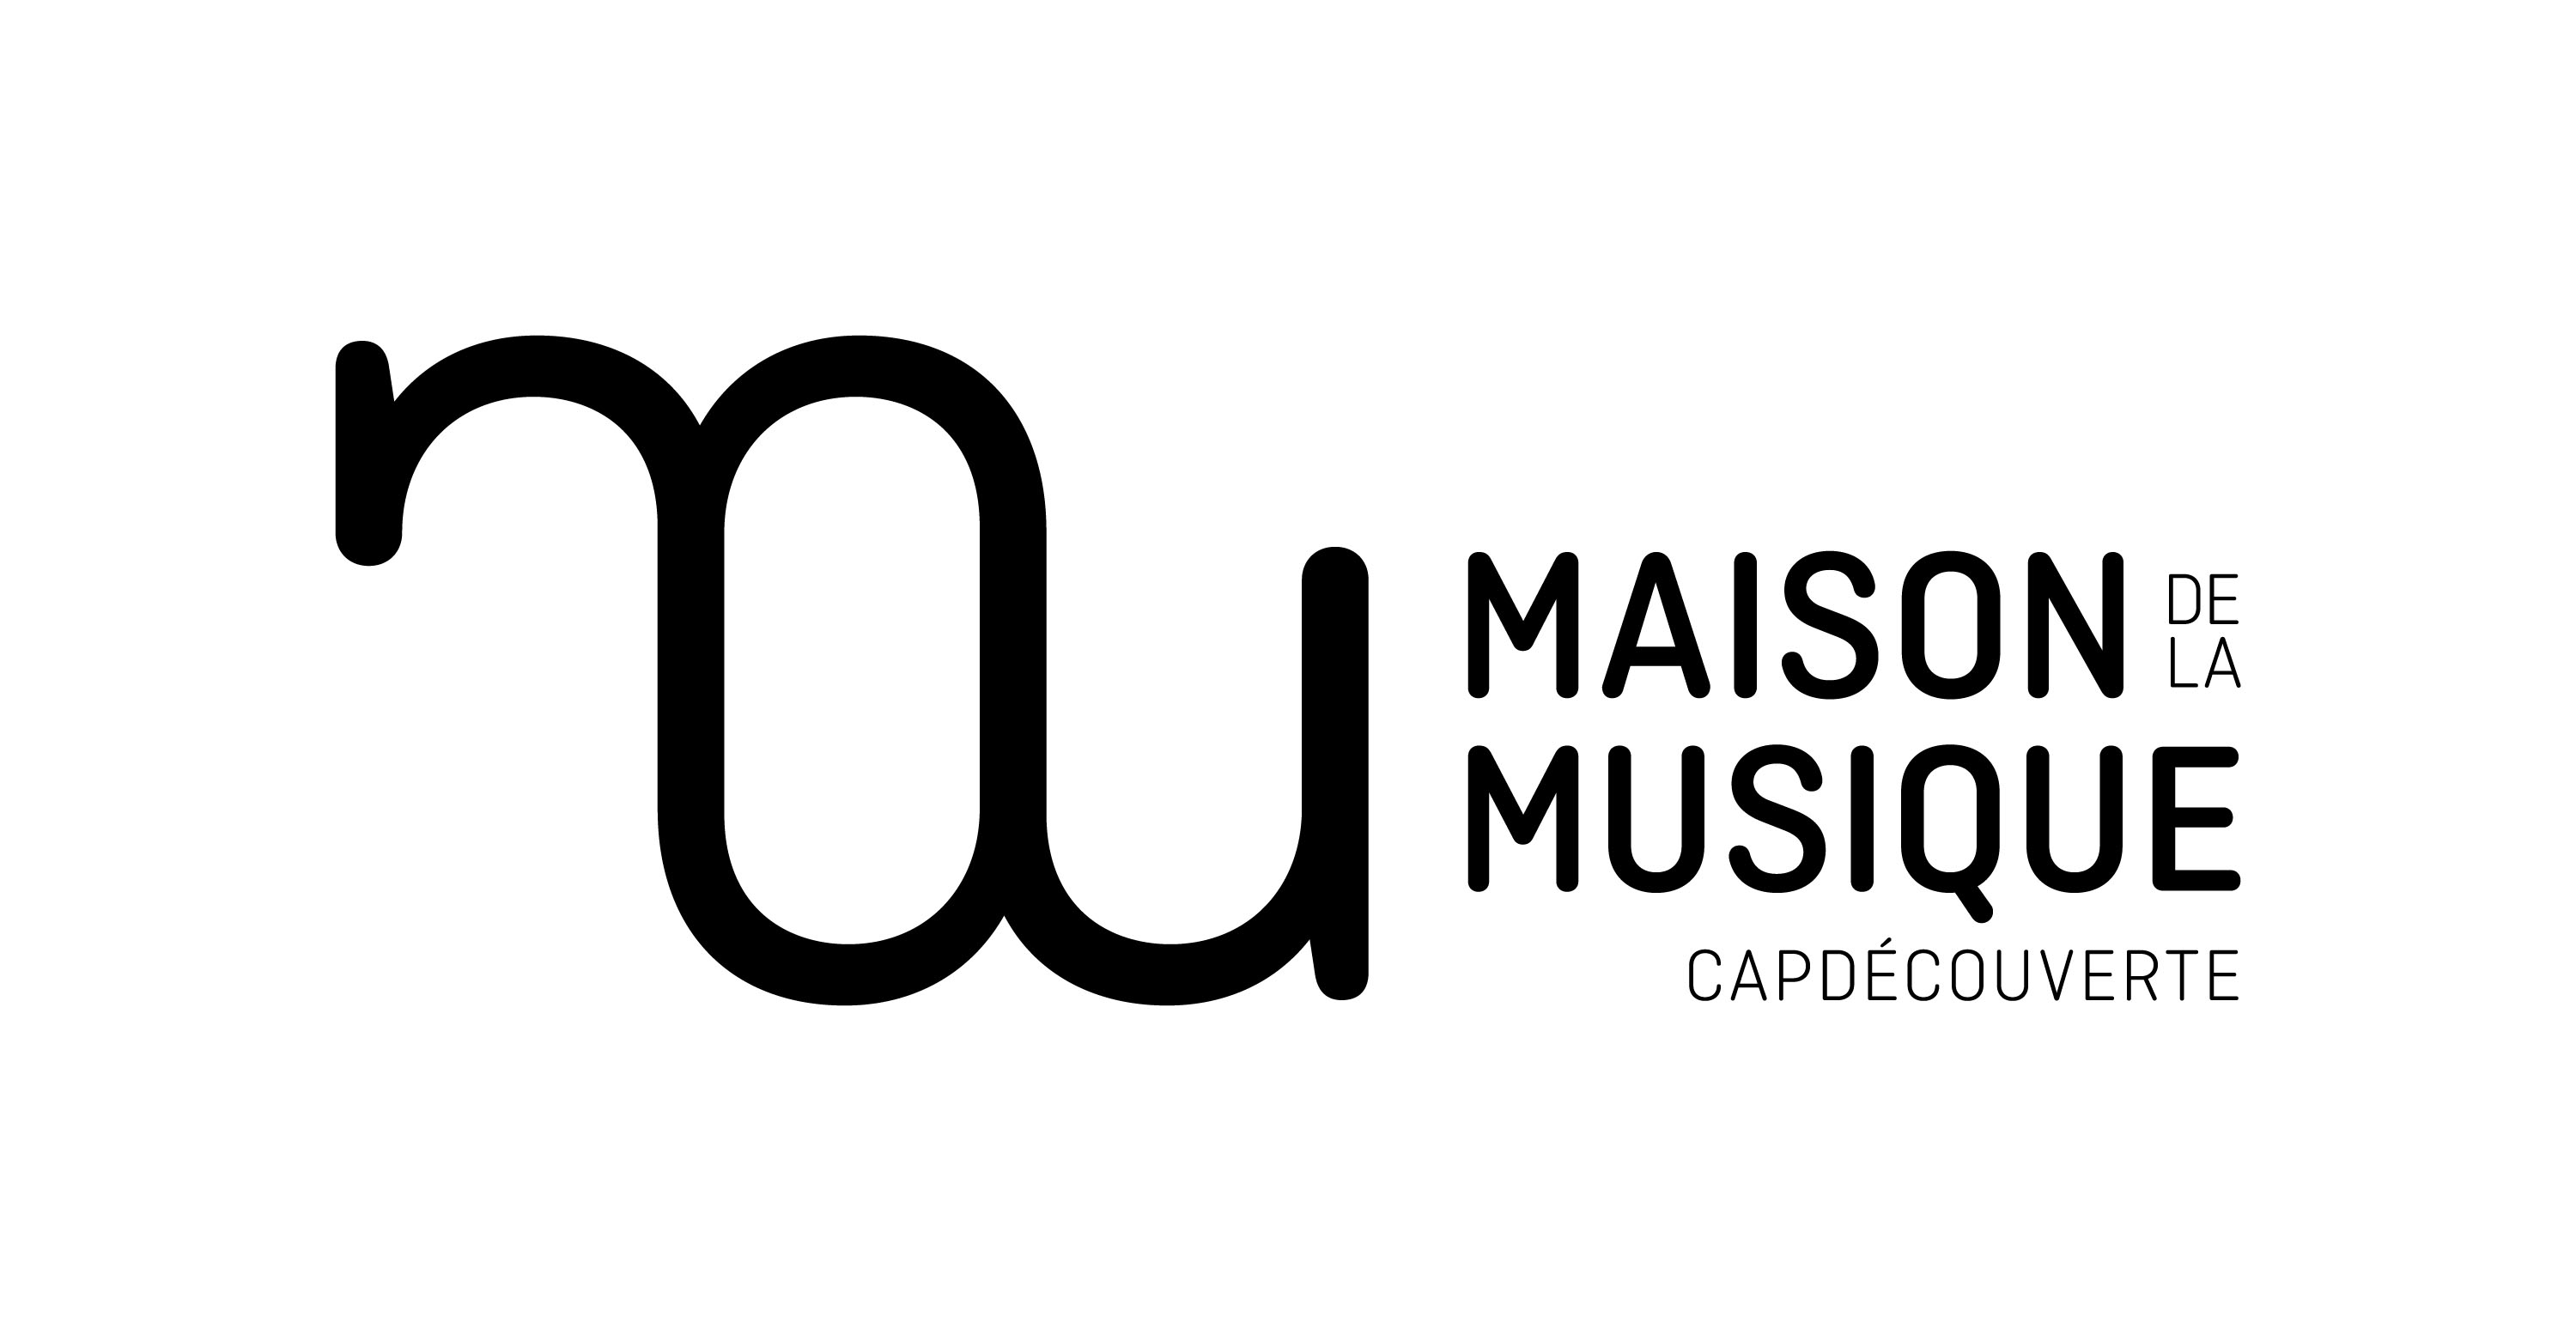 Maison_de_la_musique_de_CapDécouverte.jpg